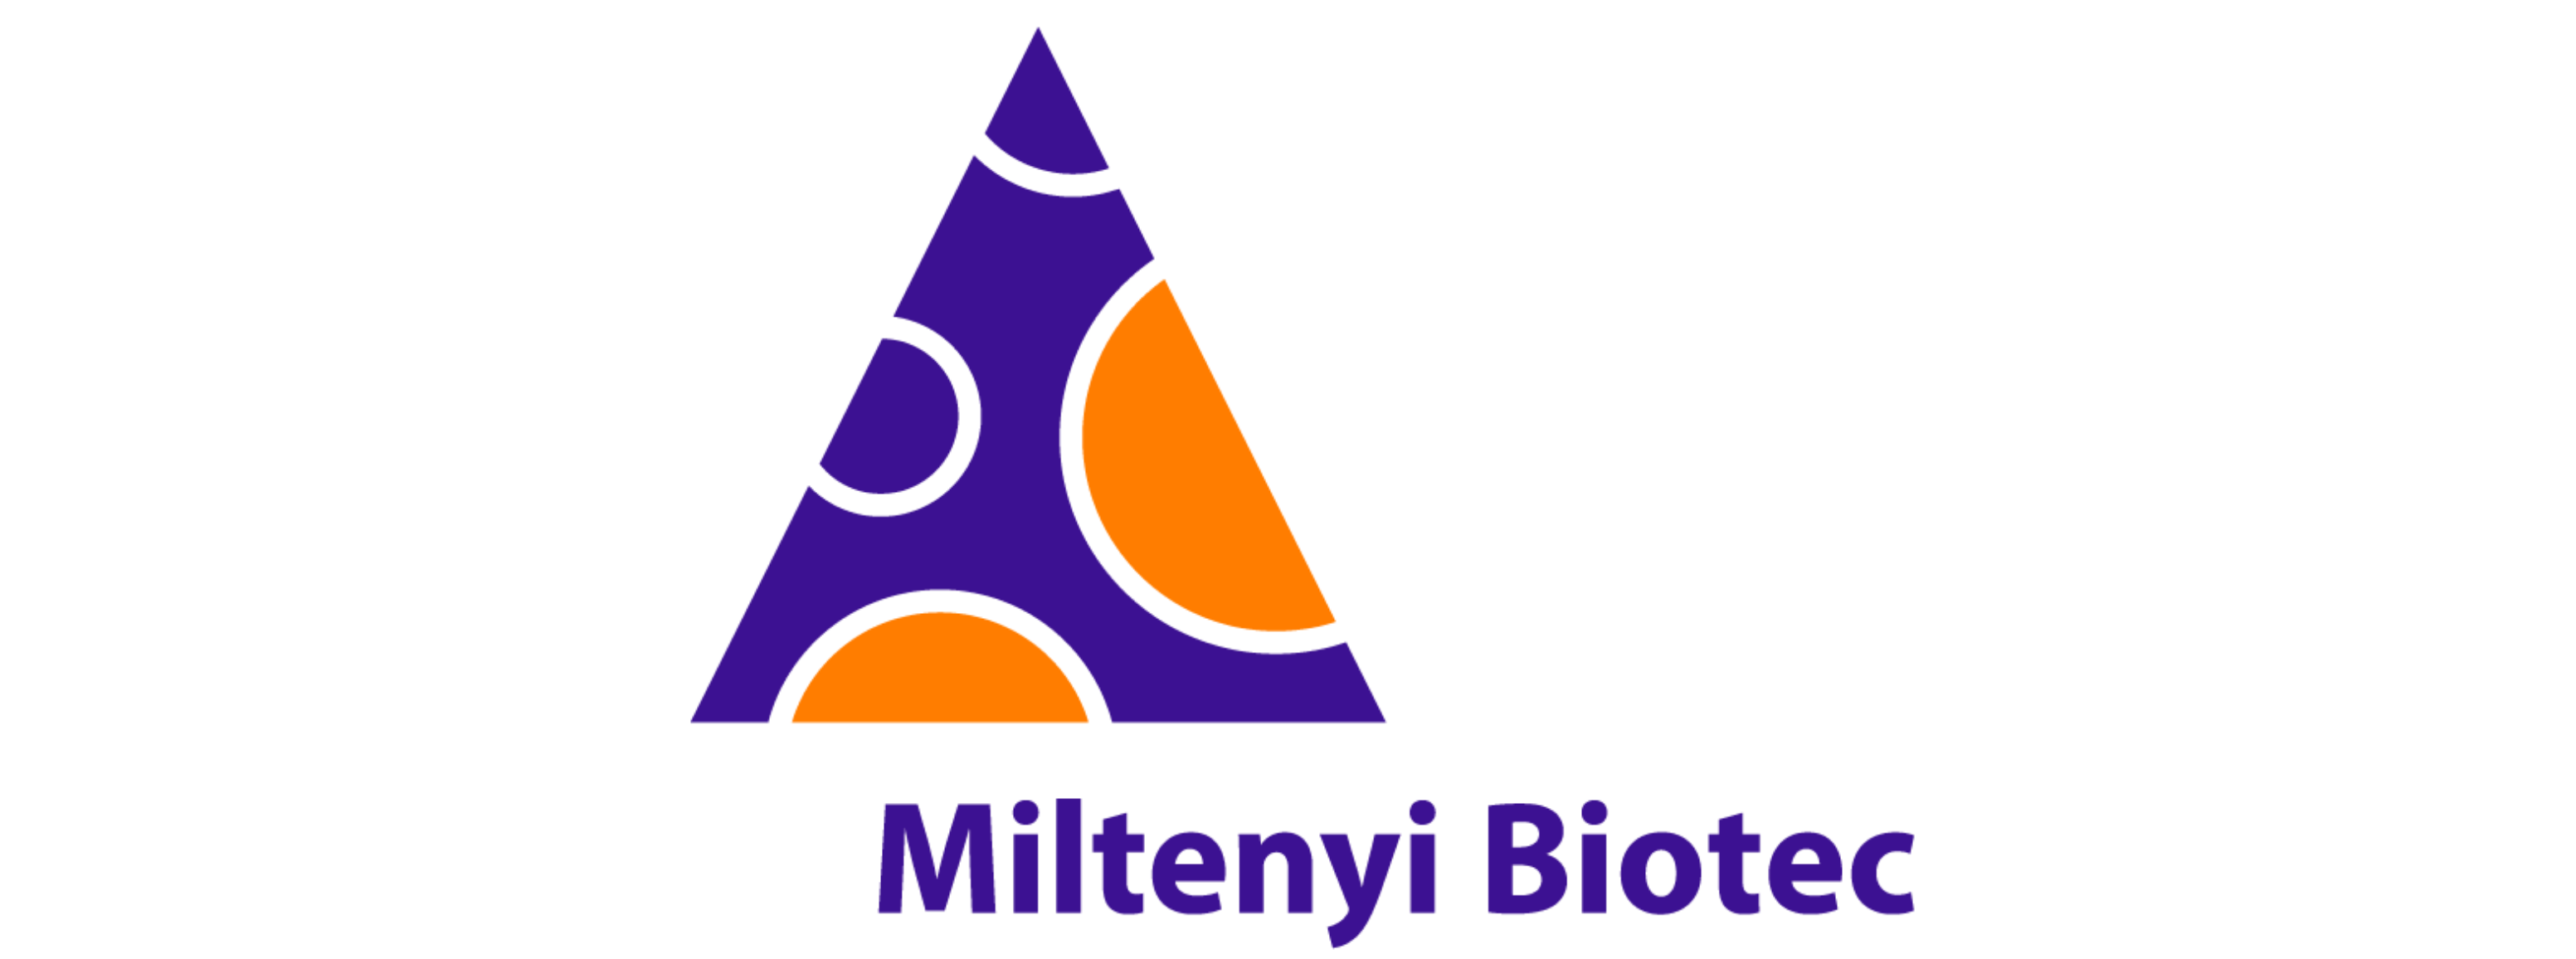 Logo-Miltenyi.png